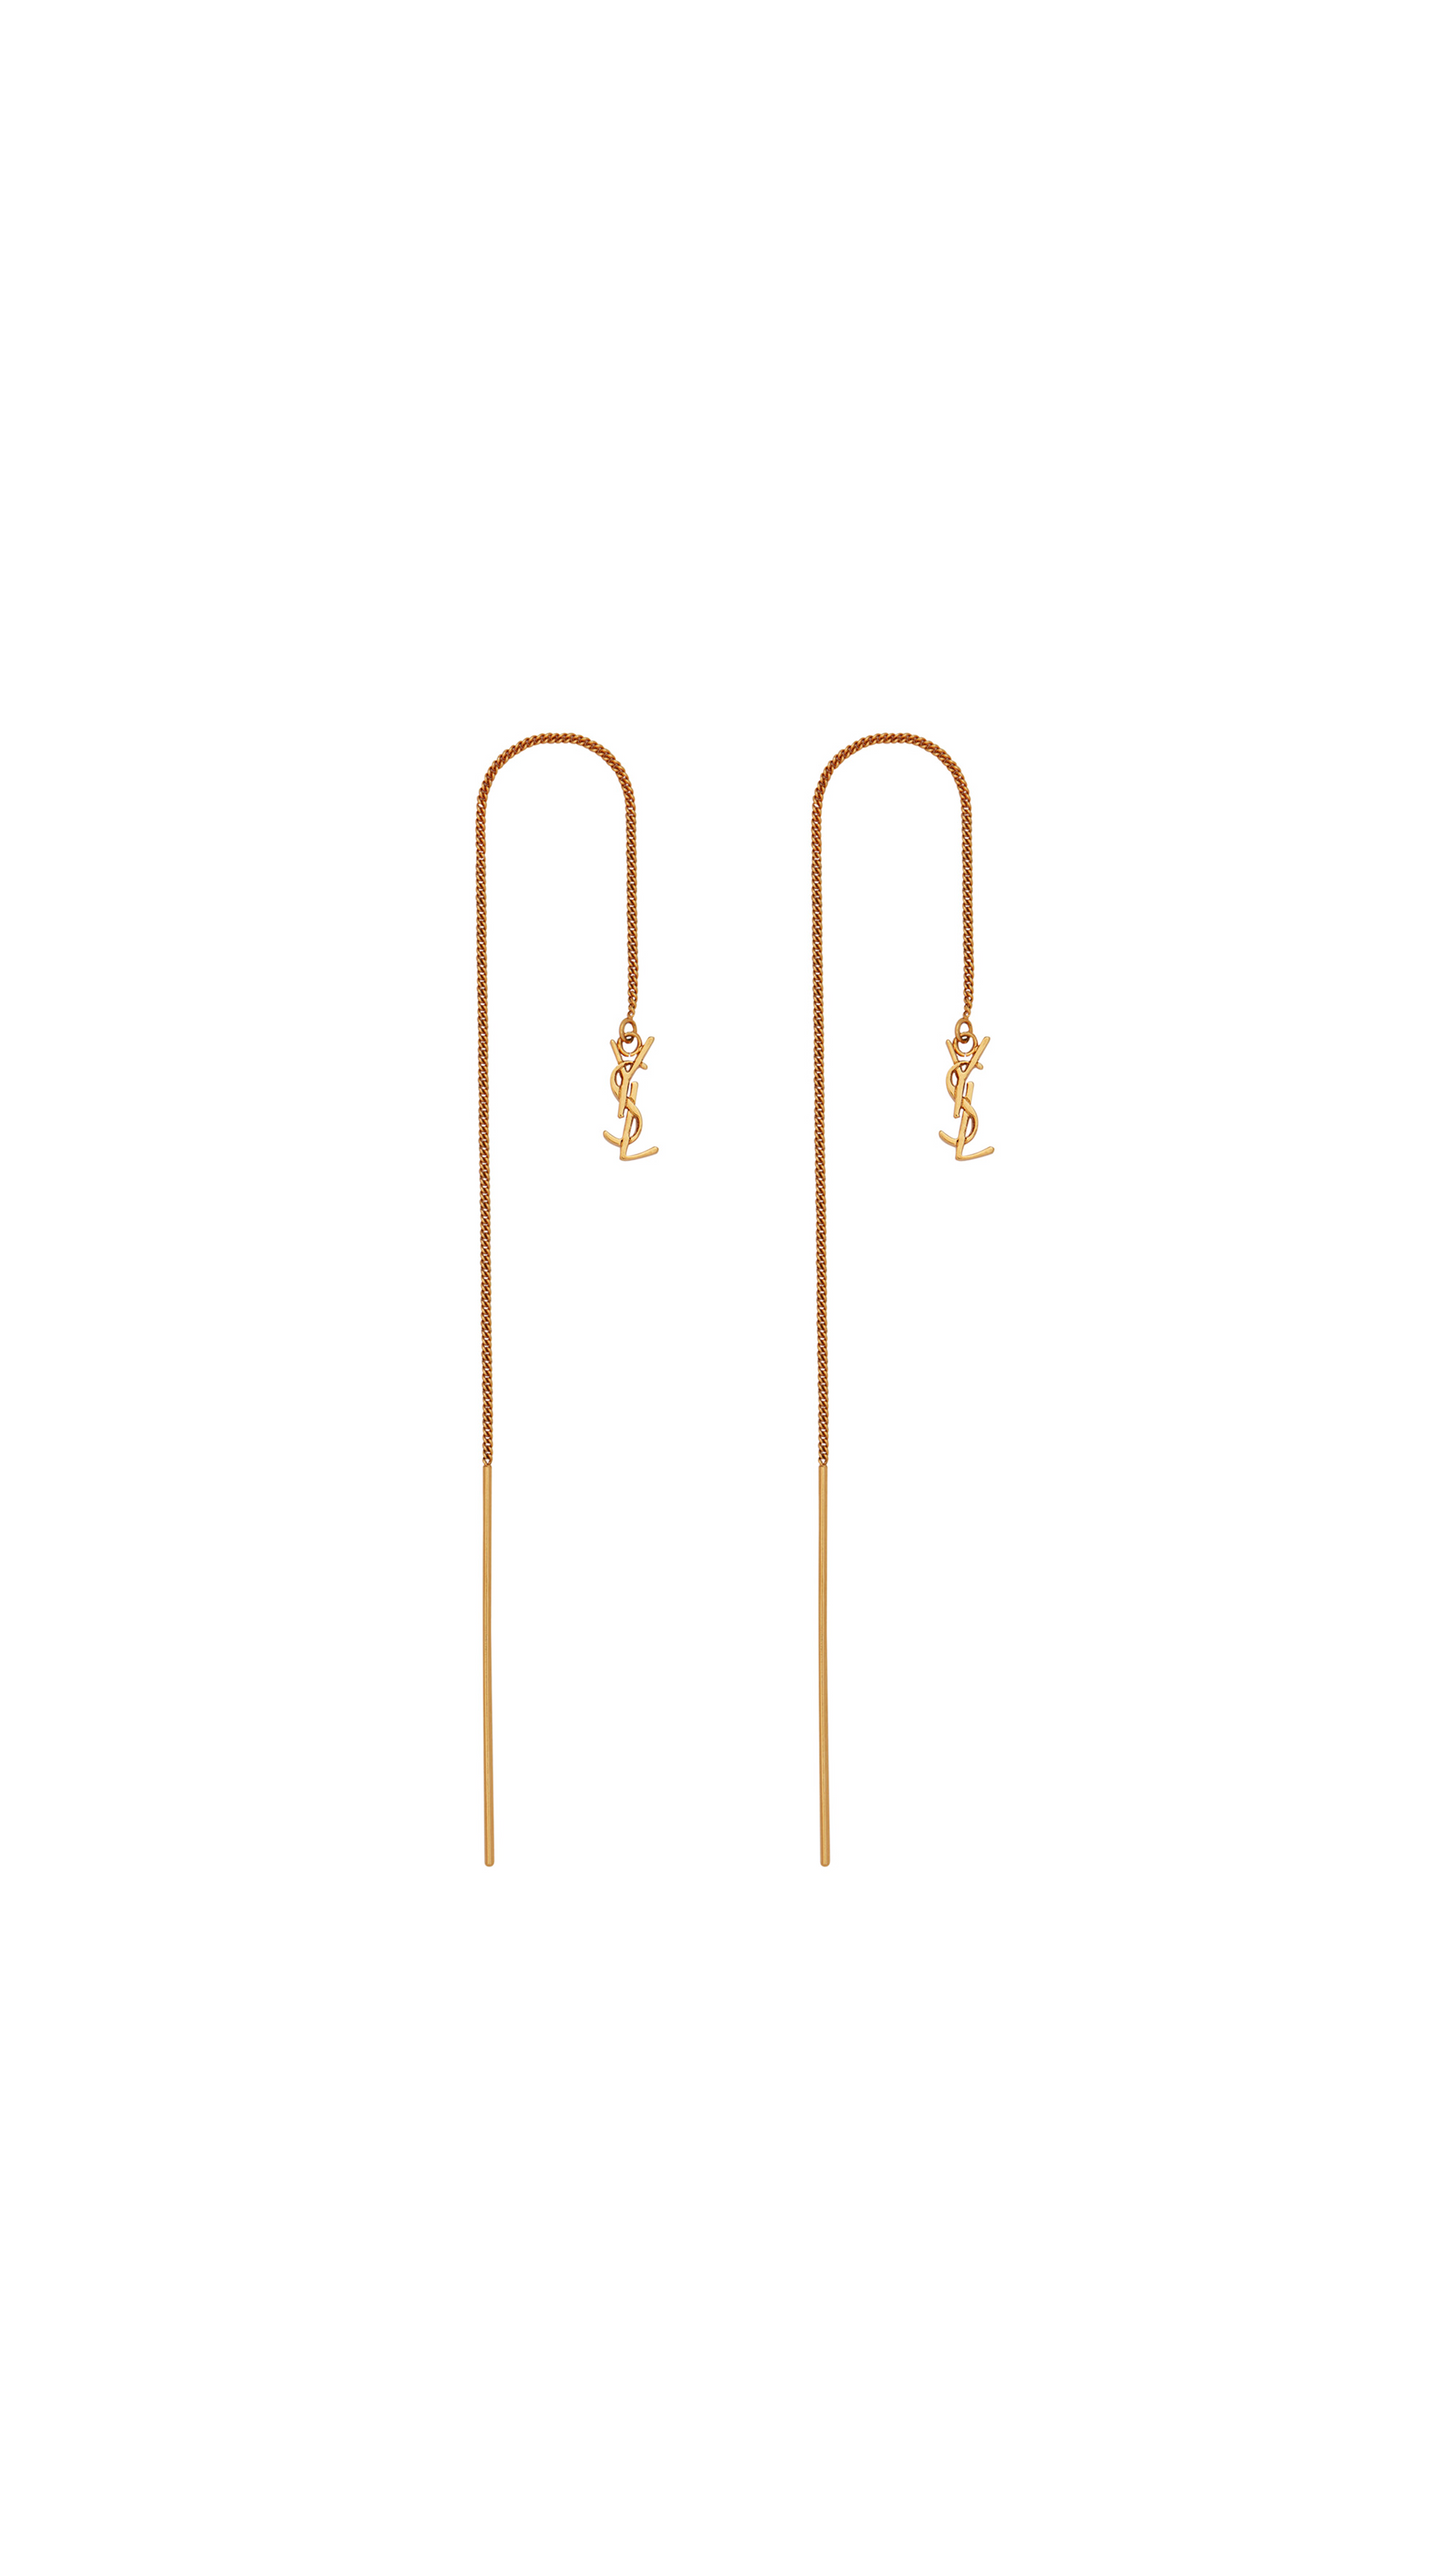 Opyum Ysl Long Threader Earrings in Metal - Gold